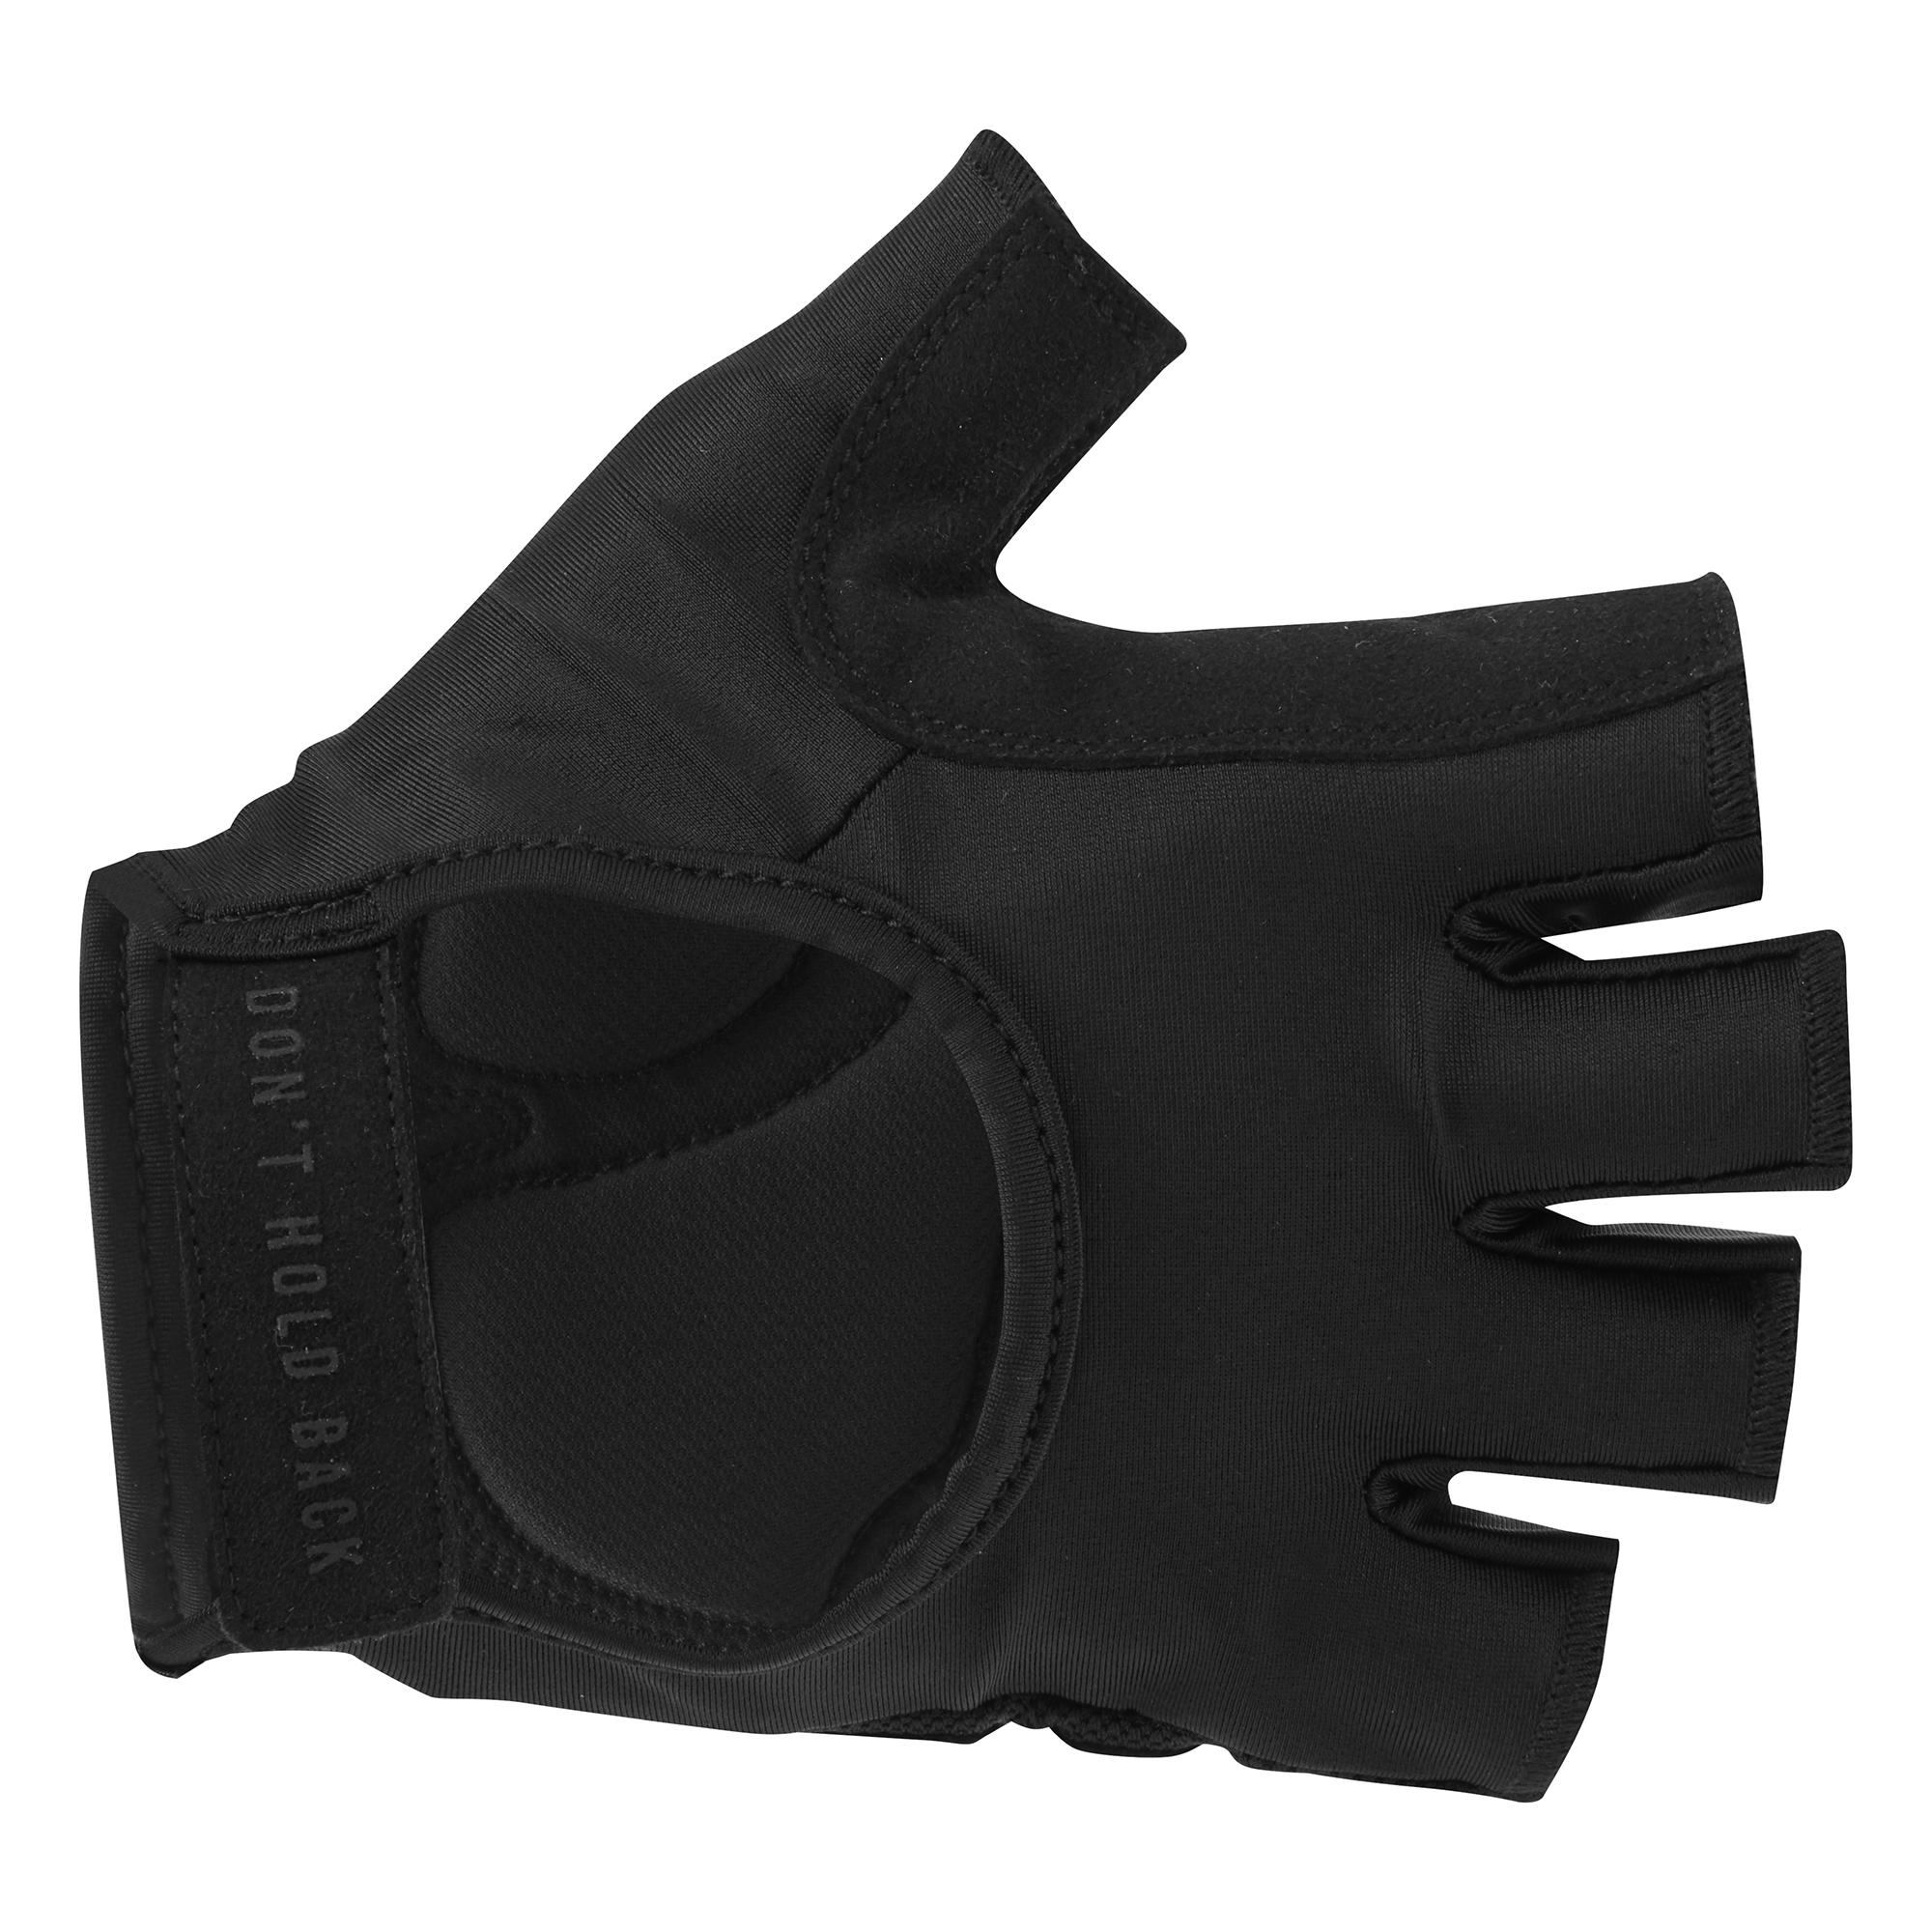 Dhb Training Gloves - Black